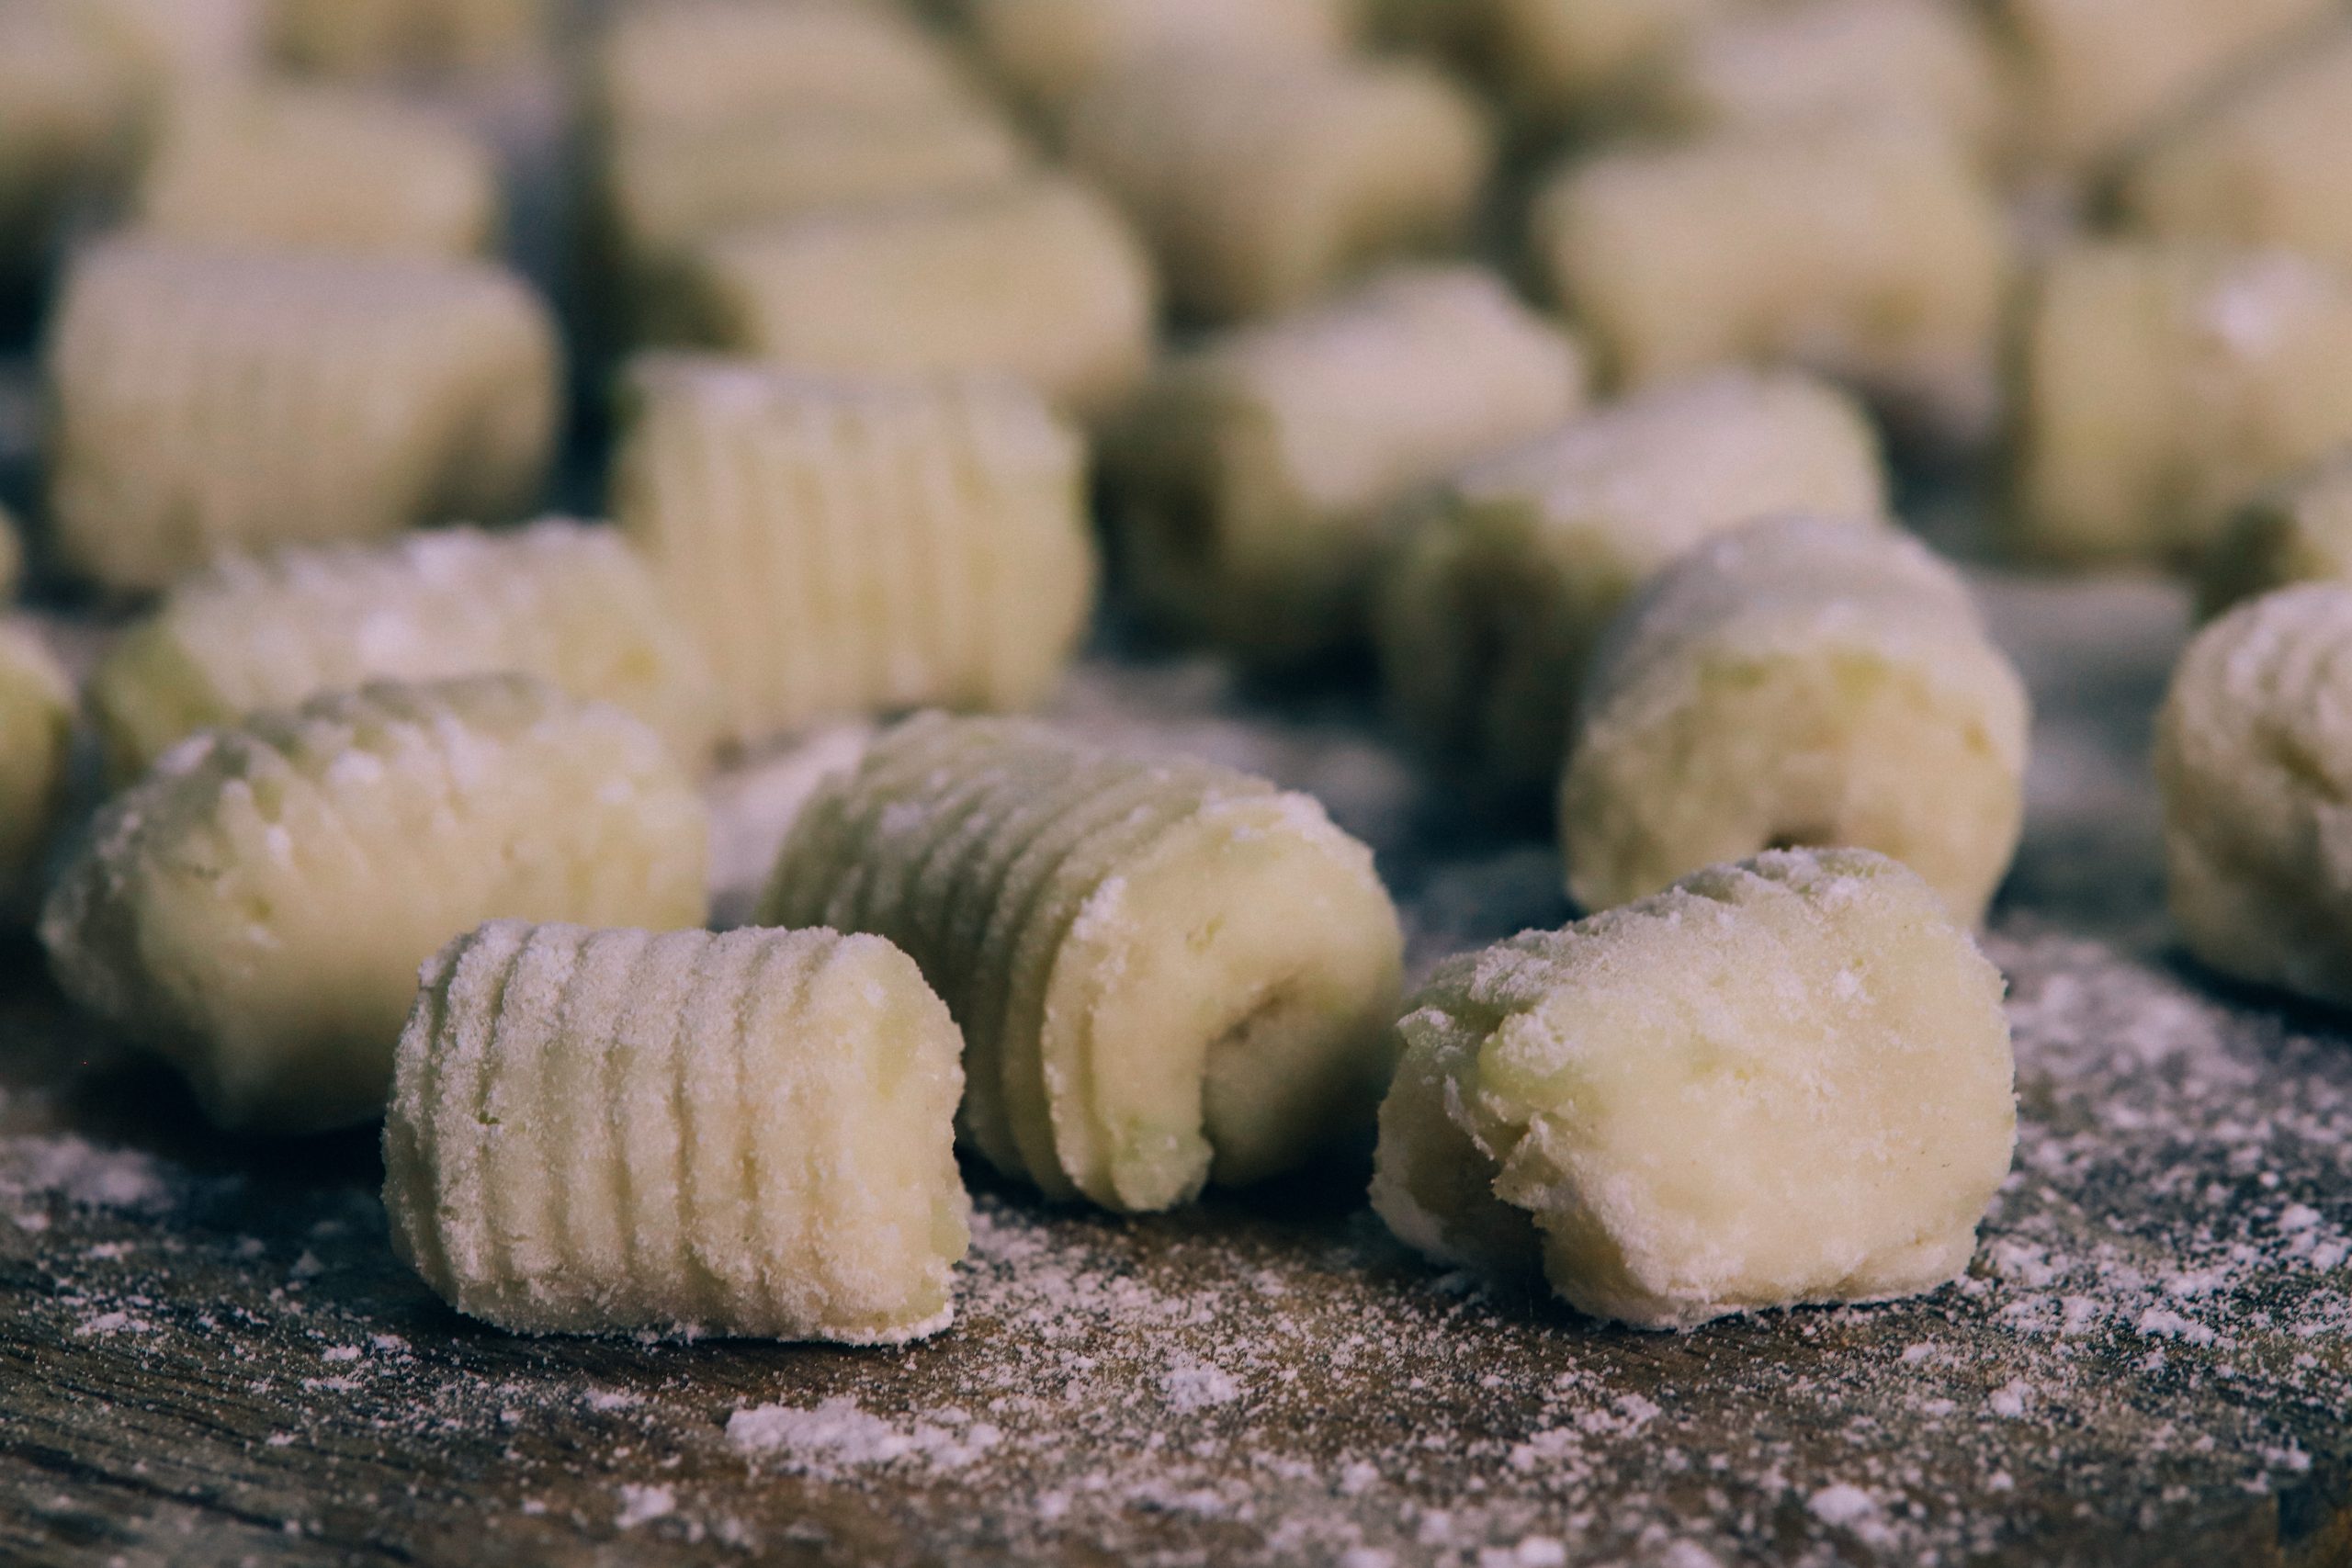 Recept om zelf gnocchi zonder ei te maken, een super lekkere aardappel pasta